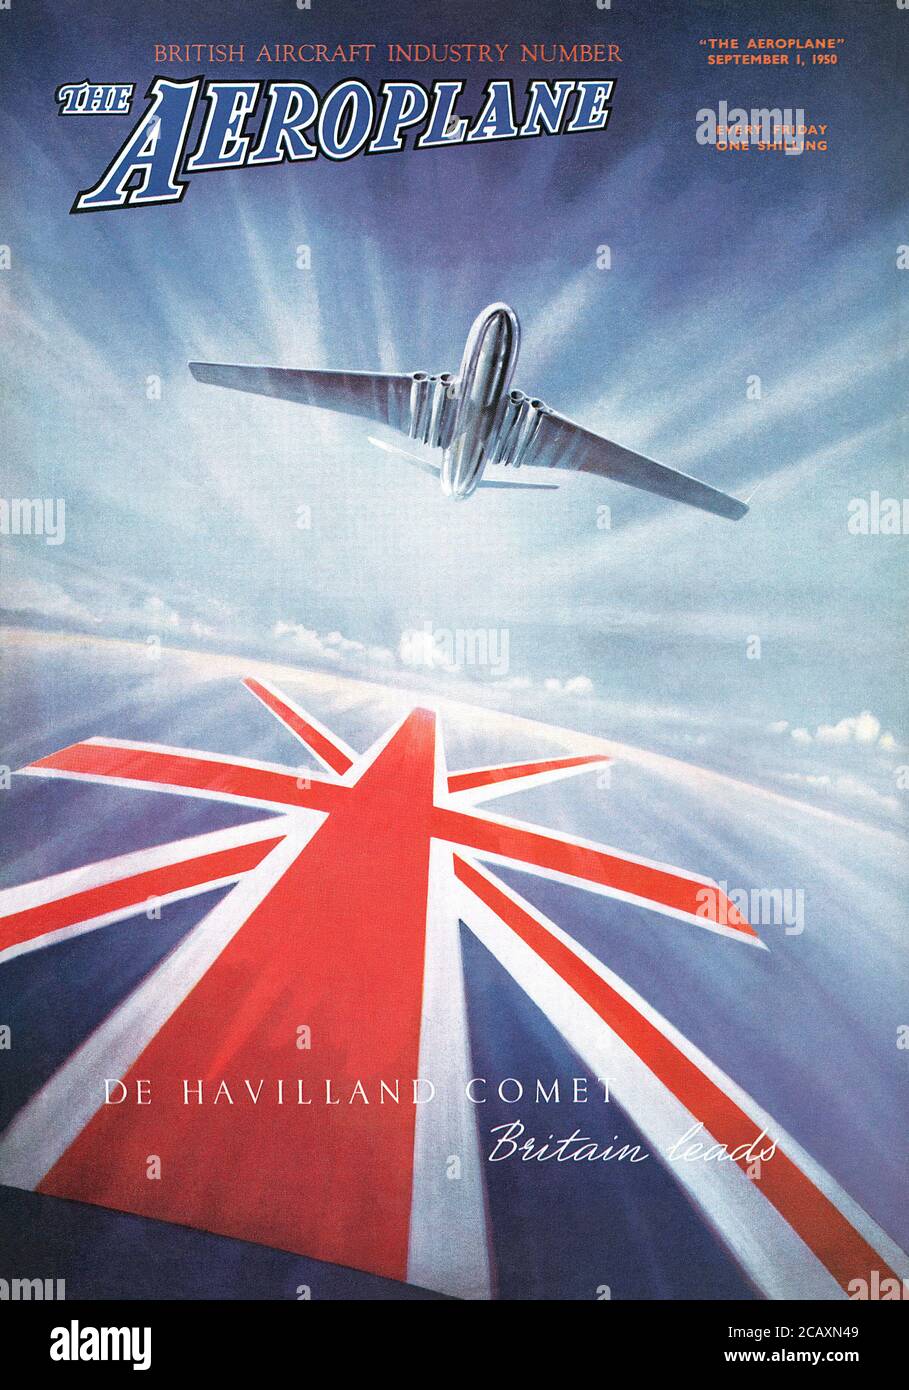 Vinatge Frontcover der Zeitschrift Airplane, mit einer Werbung für das Jet-Flugzeug De Havilland Comet. Stockfoto